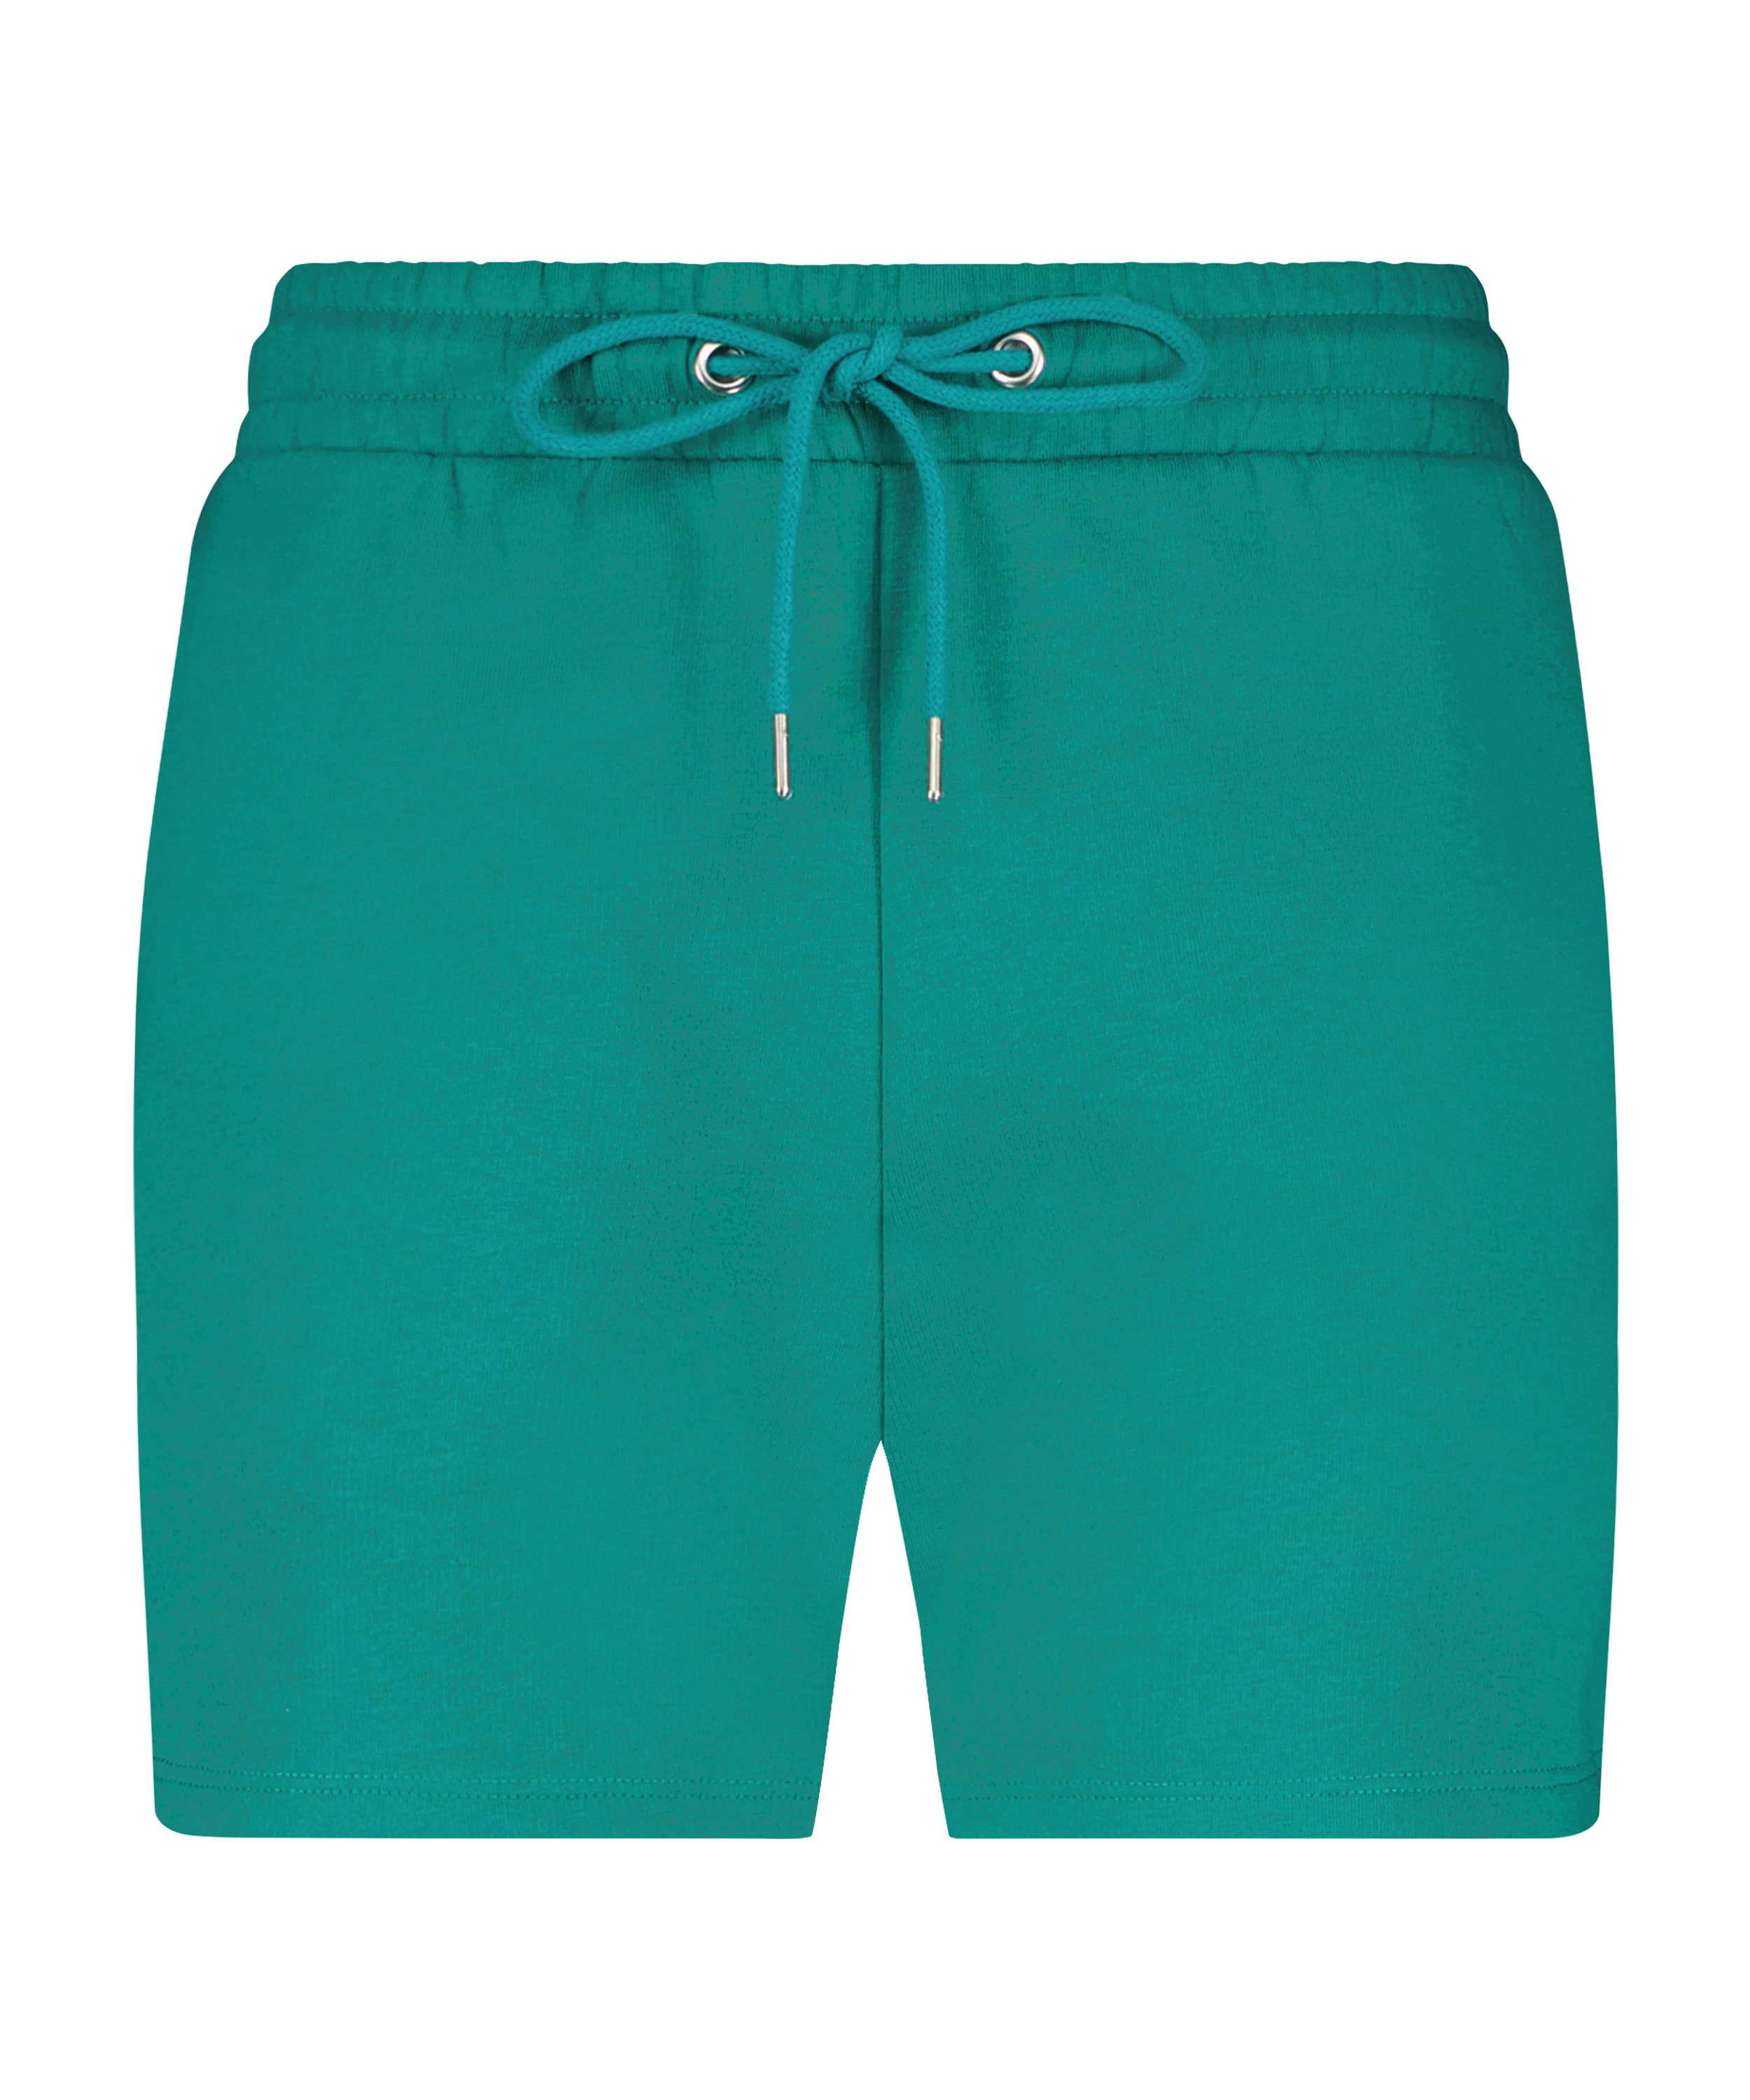 Sweat shorts, grøn, main